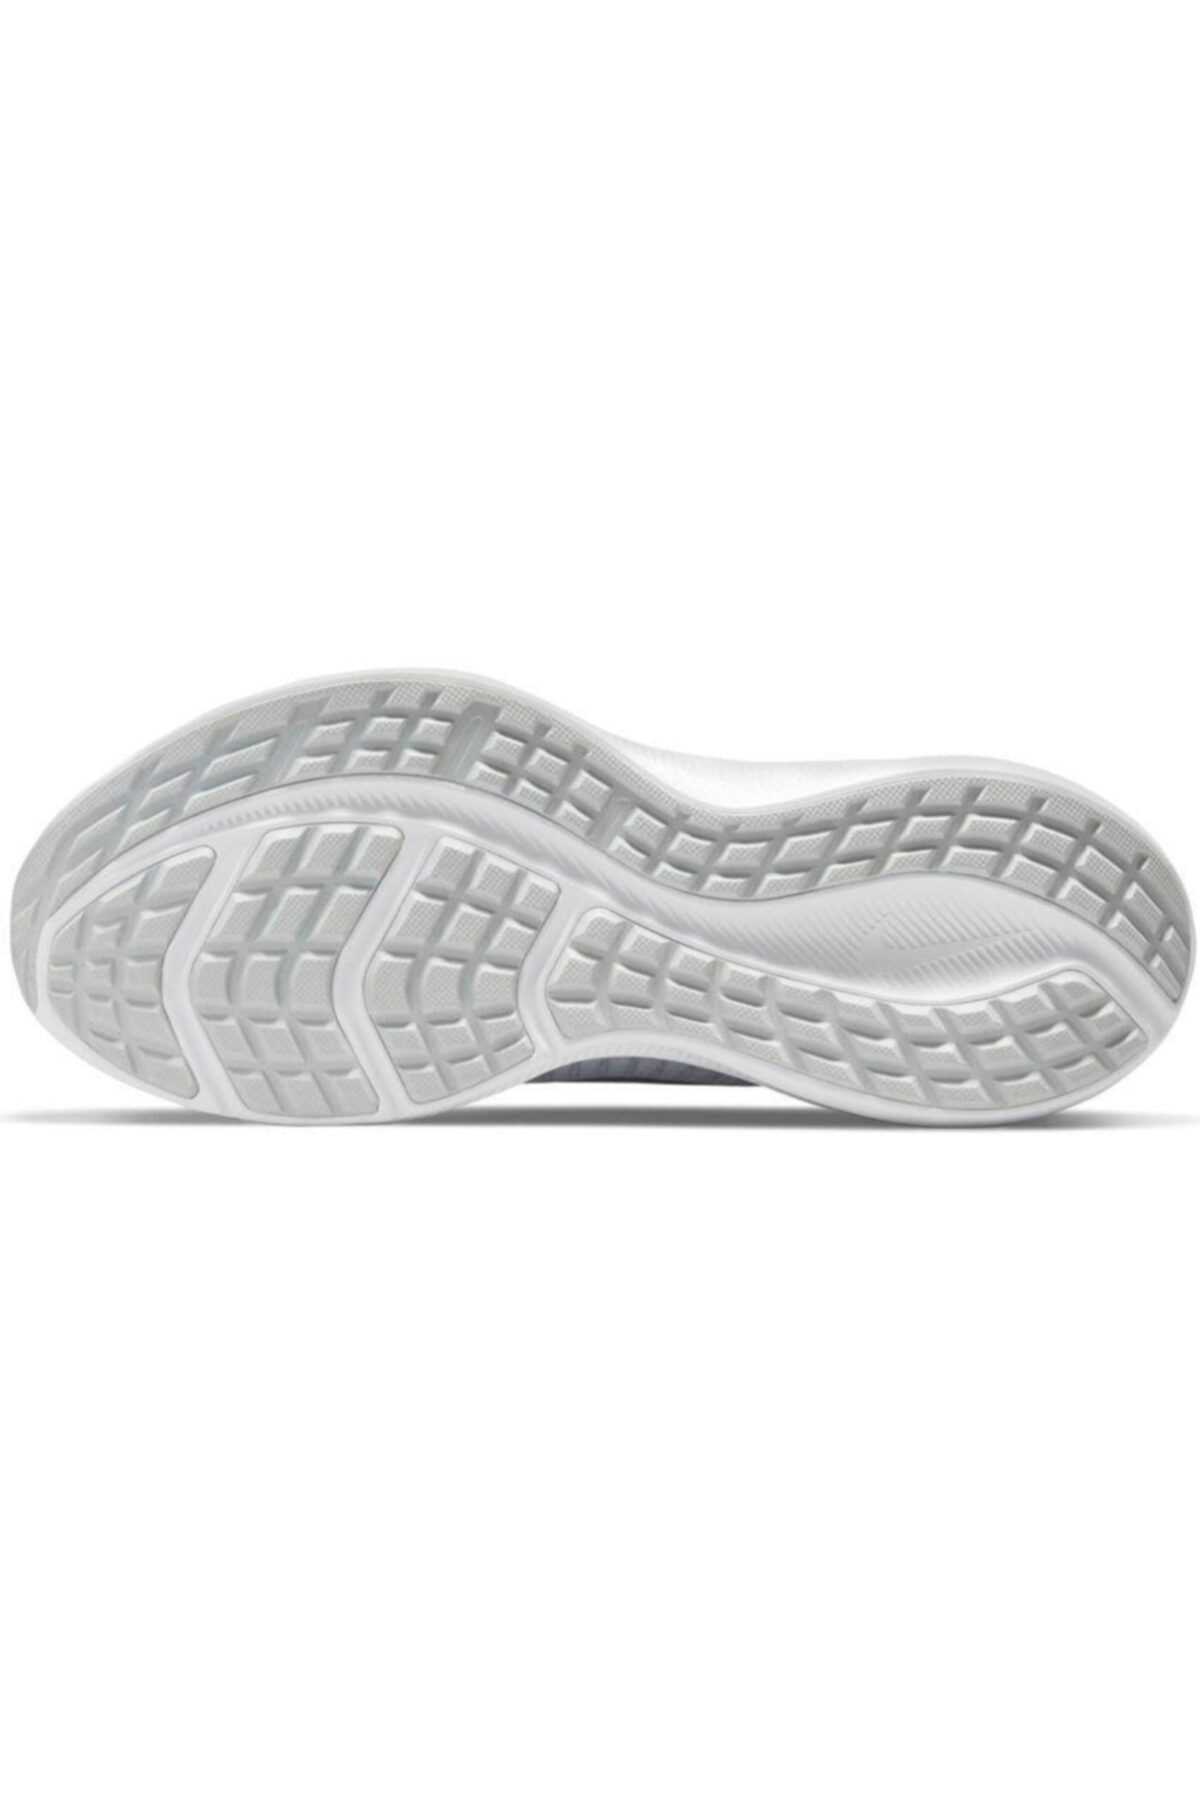 خرید کفش دویدن زنانه جدید شیک Nike اورجینال رنگ سفید ty103148264